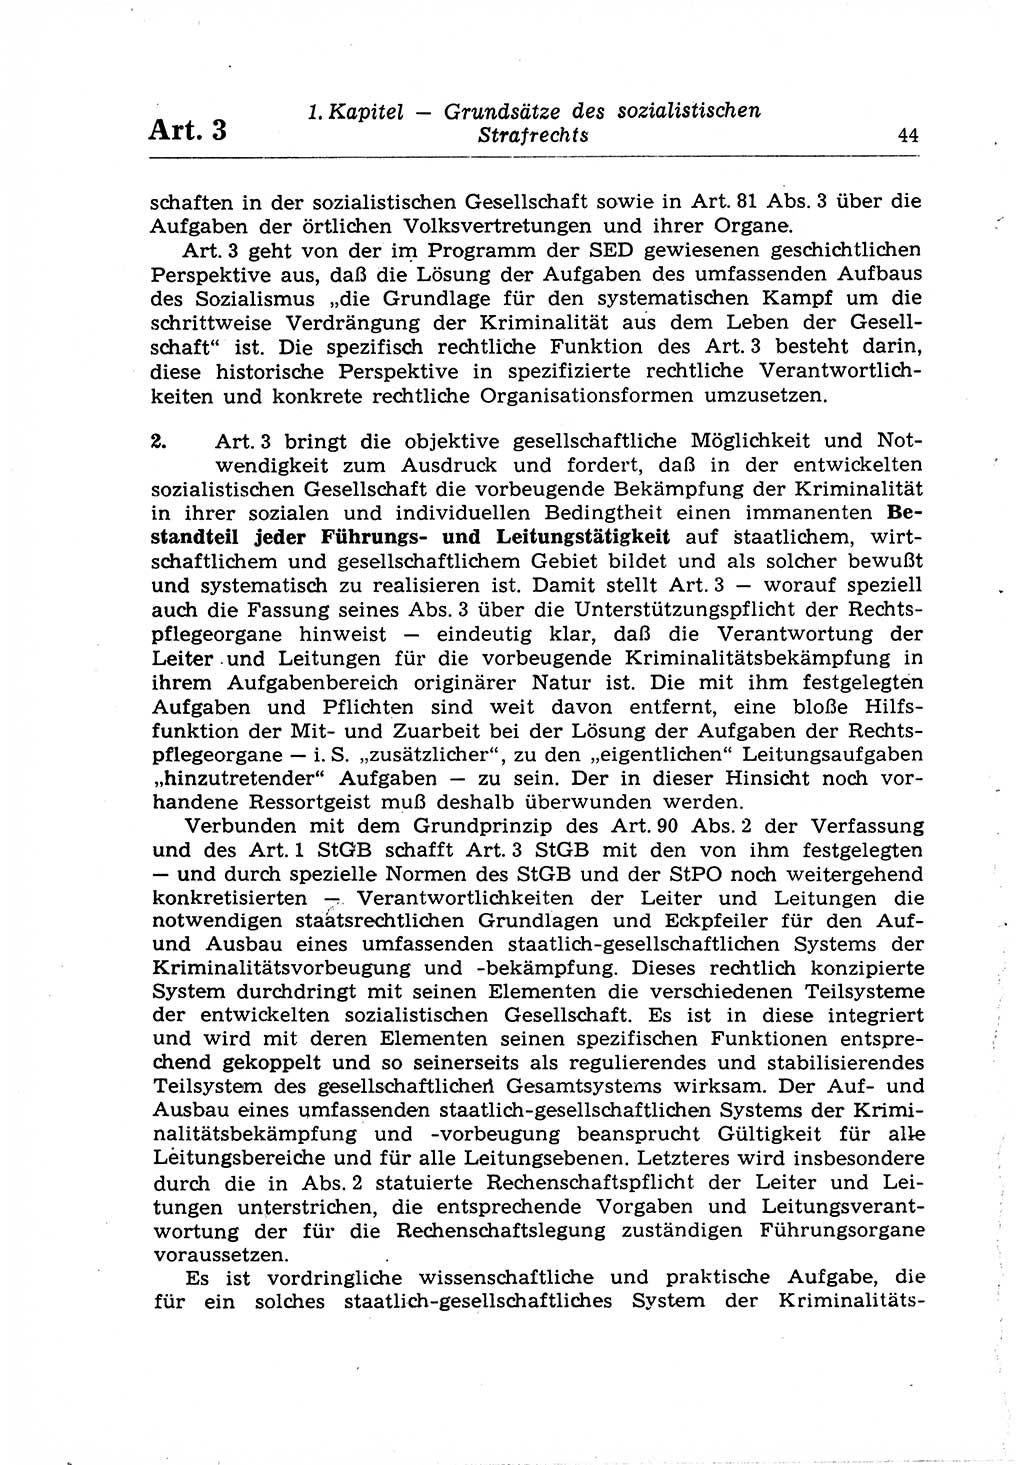 Strafrecht der Deutschen Demokratischen Republik (DDR), Lehrkommentar zum Strafgesetzbuch (StGB), Allgemeiner Teil 1969, Seite 44 (Strafr. DDR Lehrkomm. StGB AT 1969, S. 44)